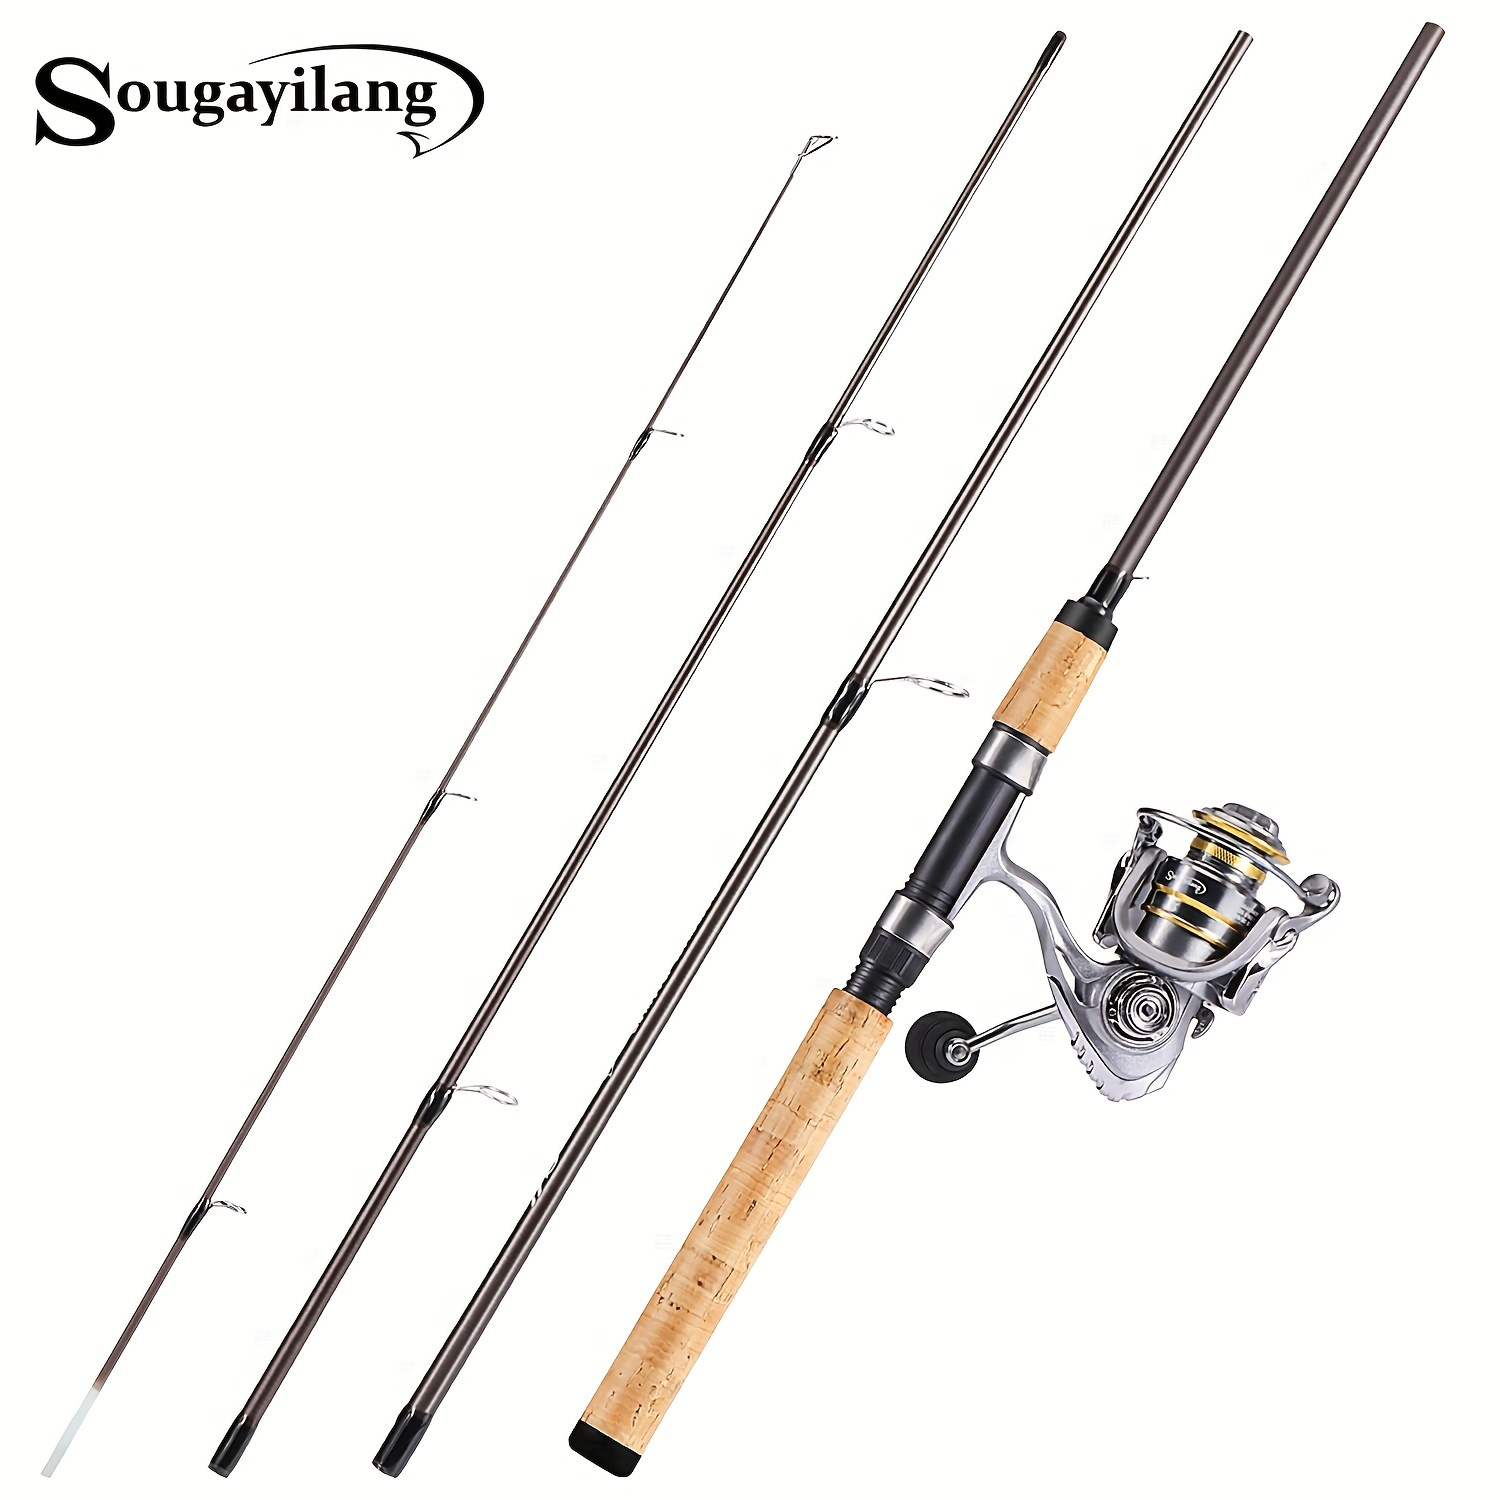 Sougayilang Spinning Fishing Rod, Spinning Rod, Baitcasting Rod